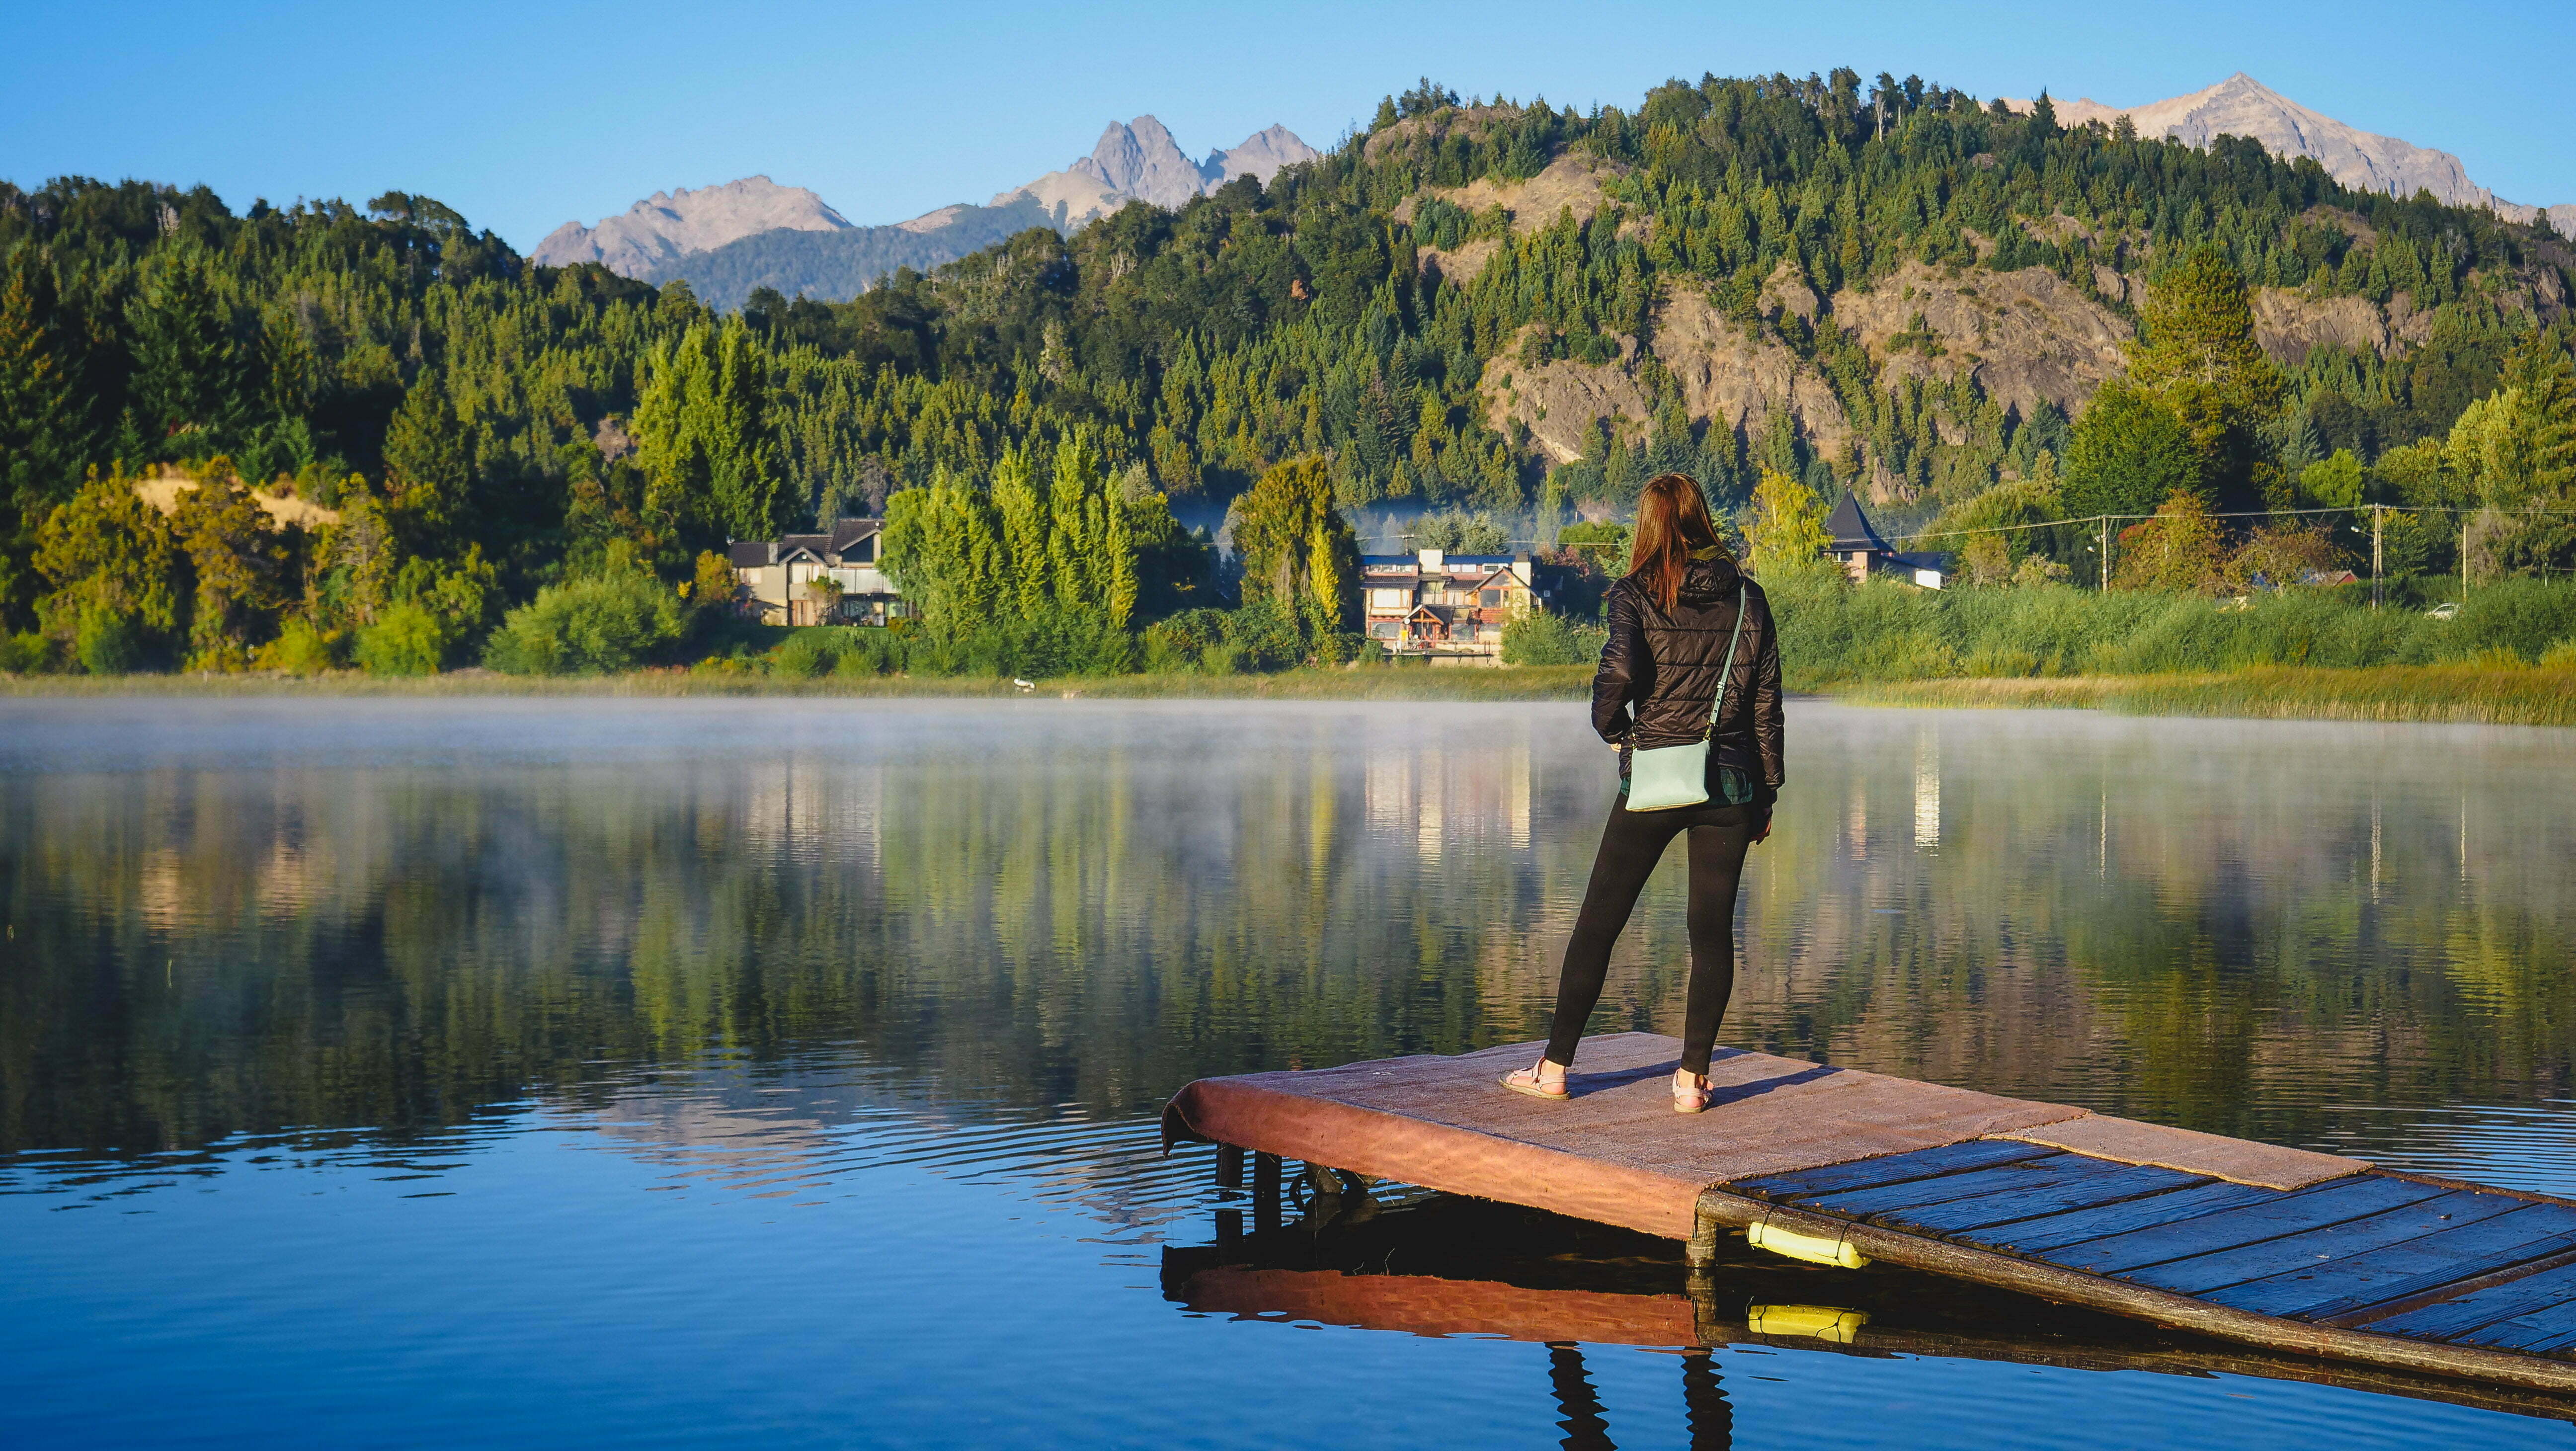 Audrey overlooking scenery in Bariloche, Argentina